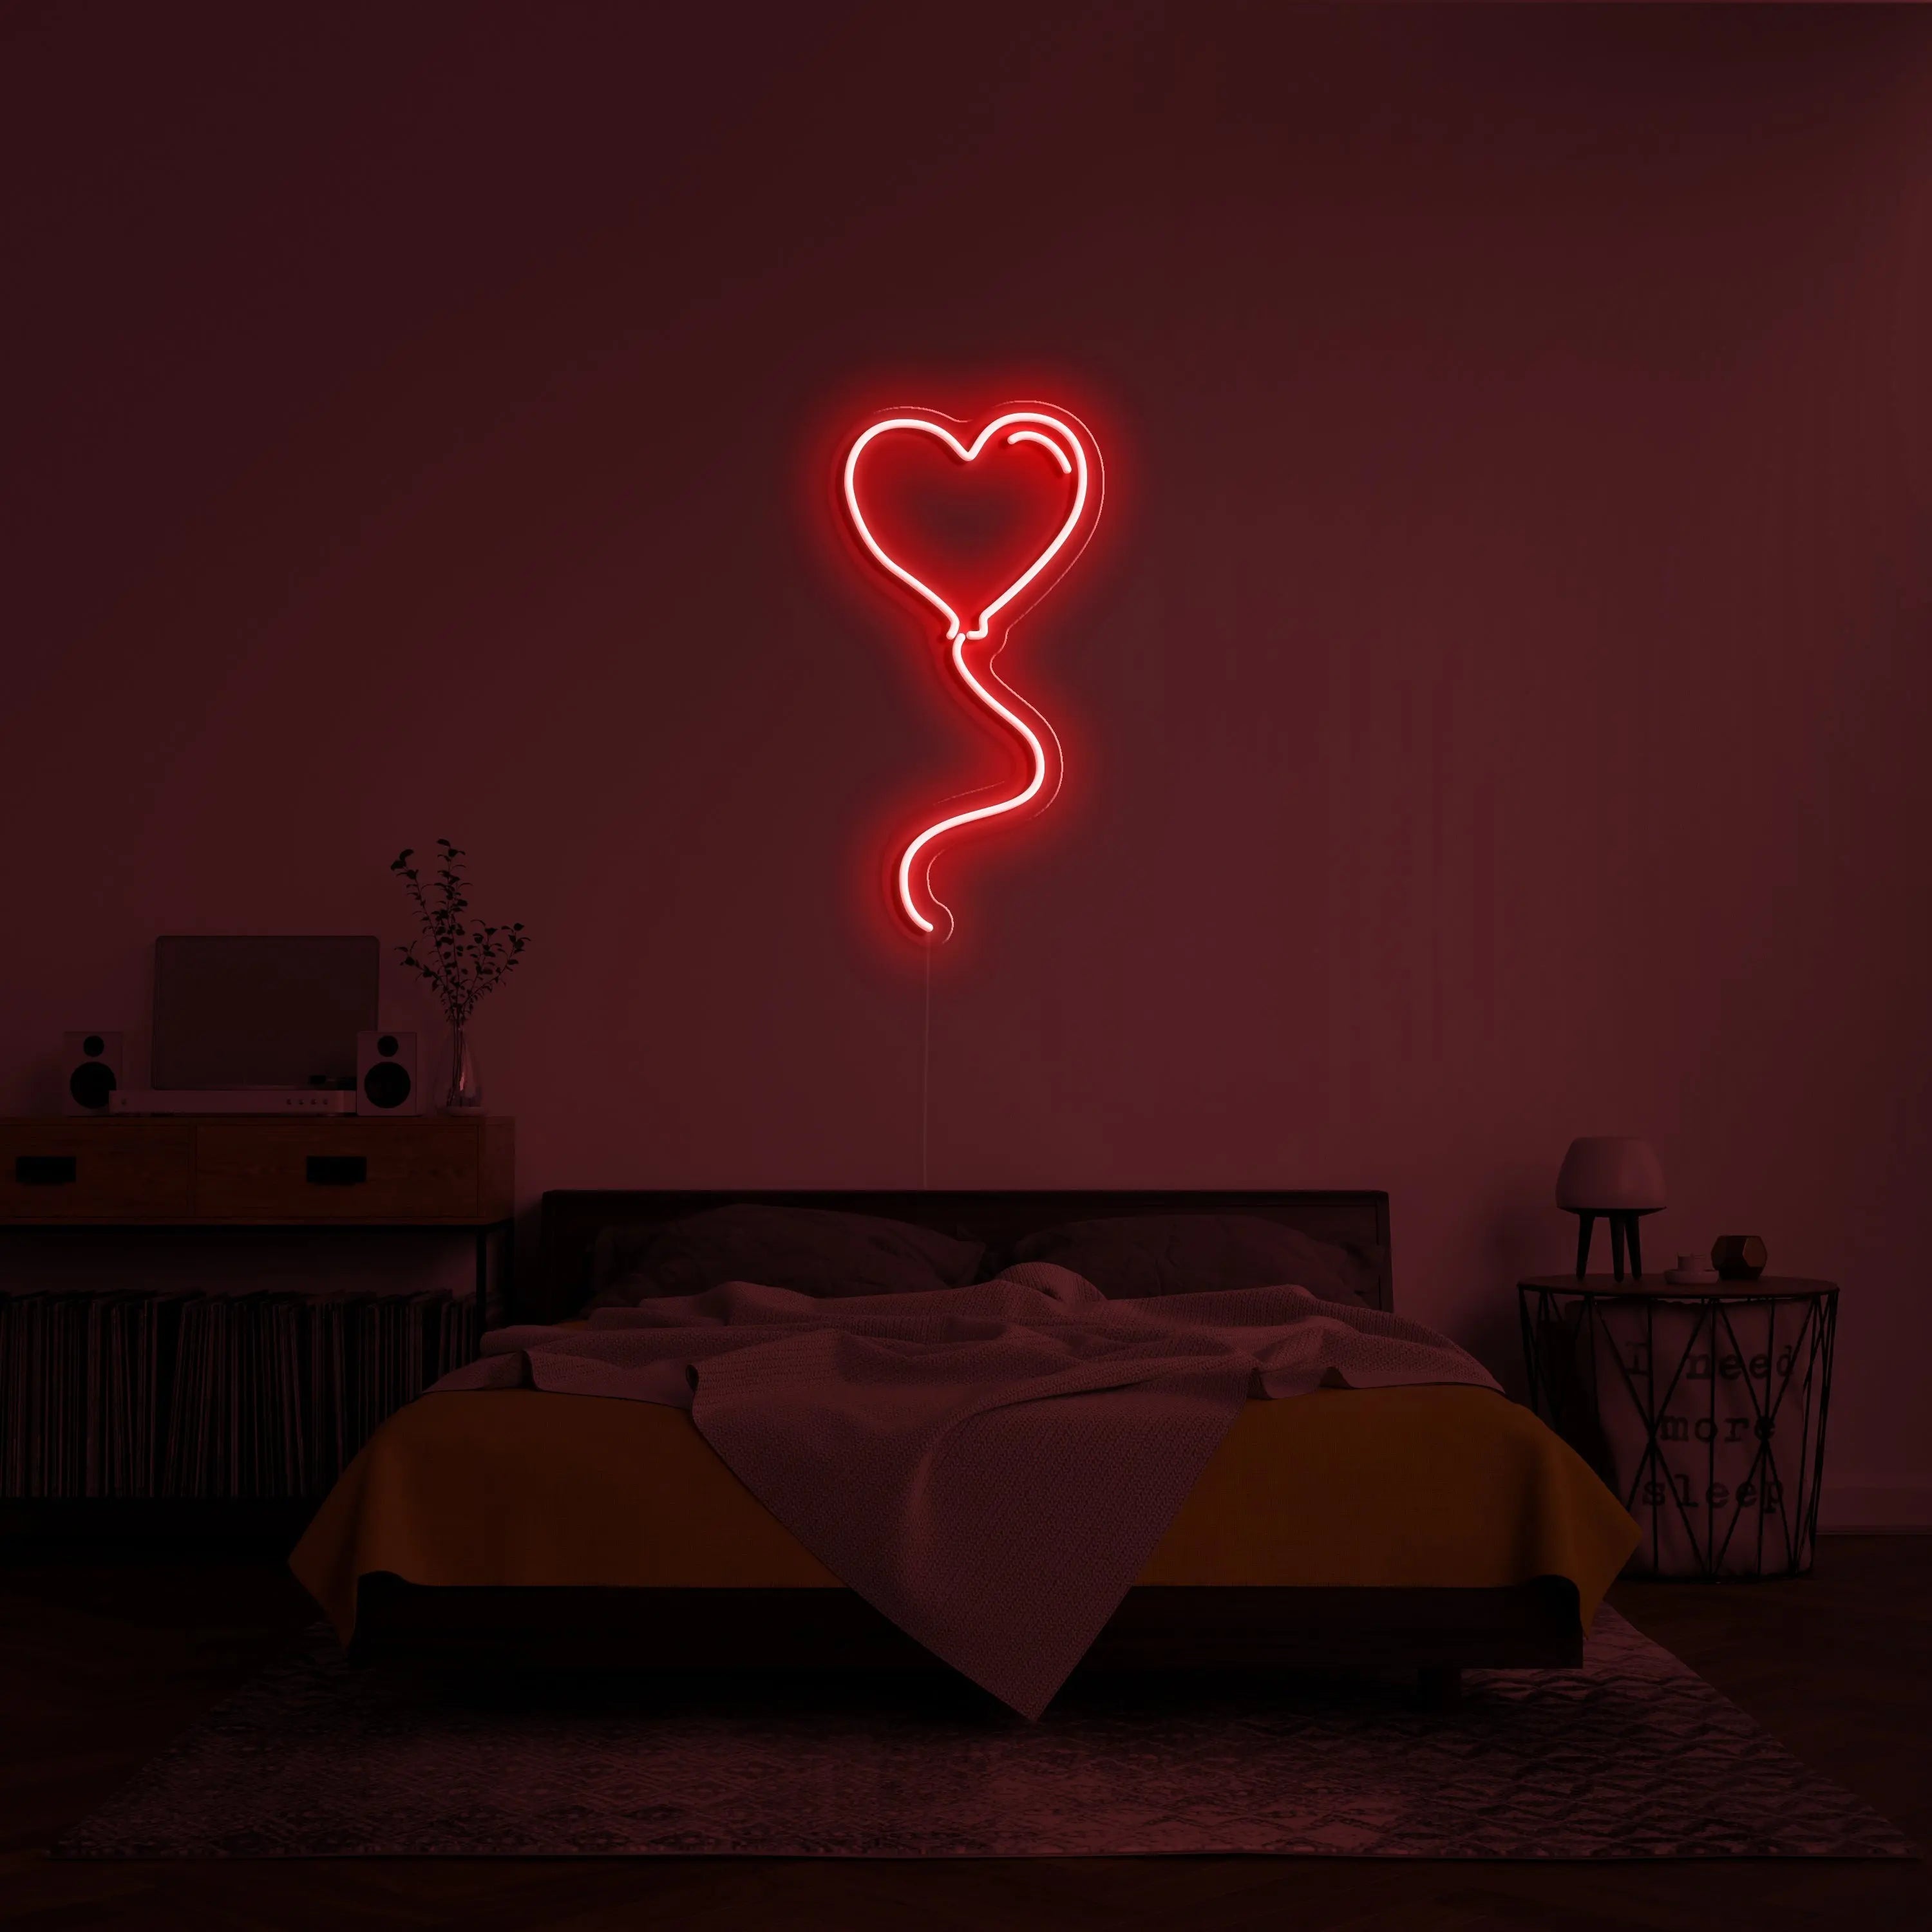 Heart Balloon Neon Sign - neonaffair